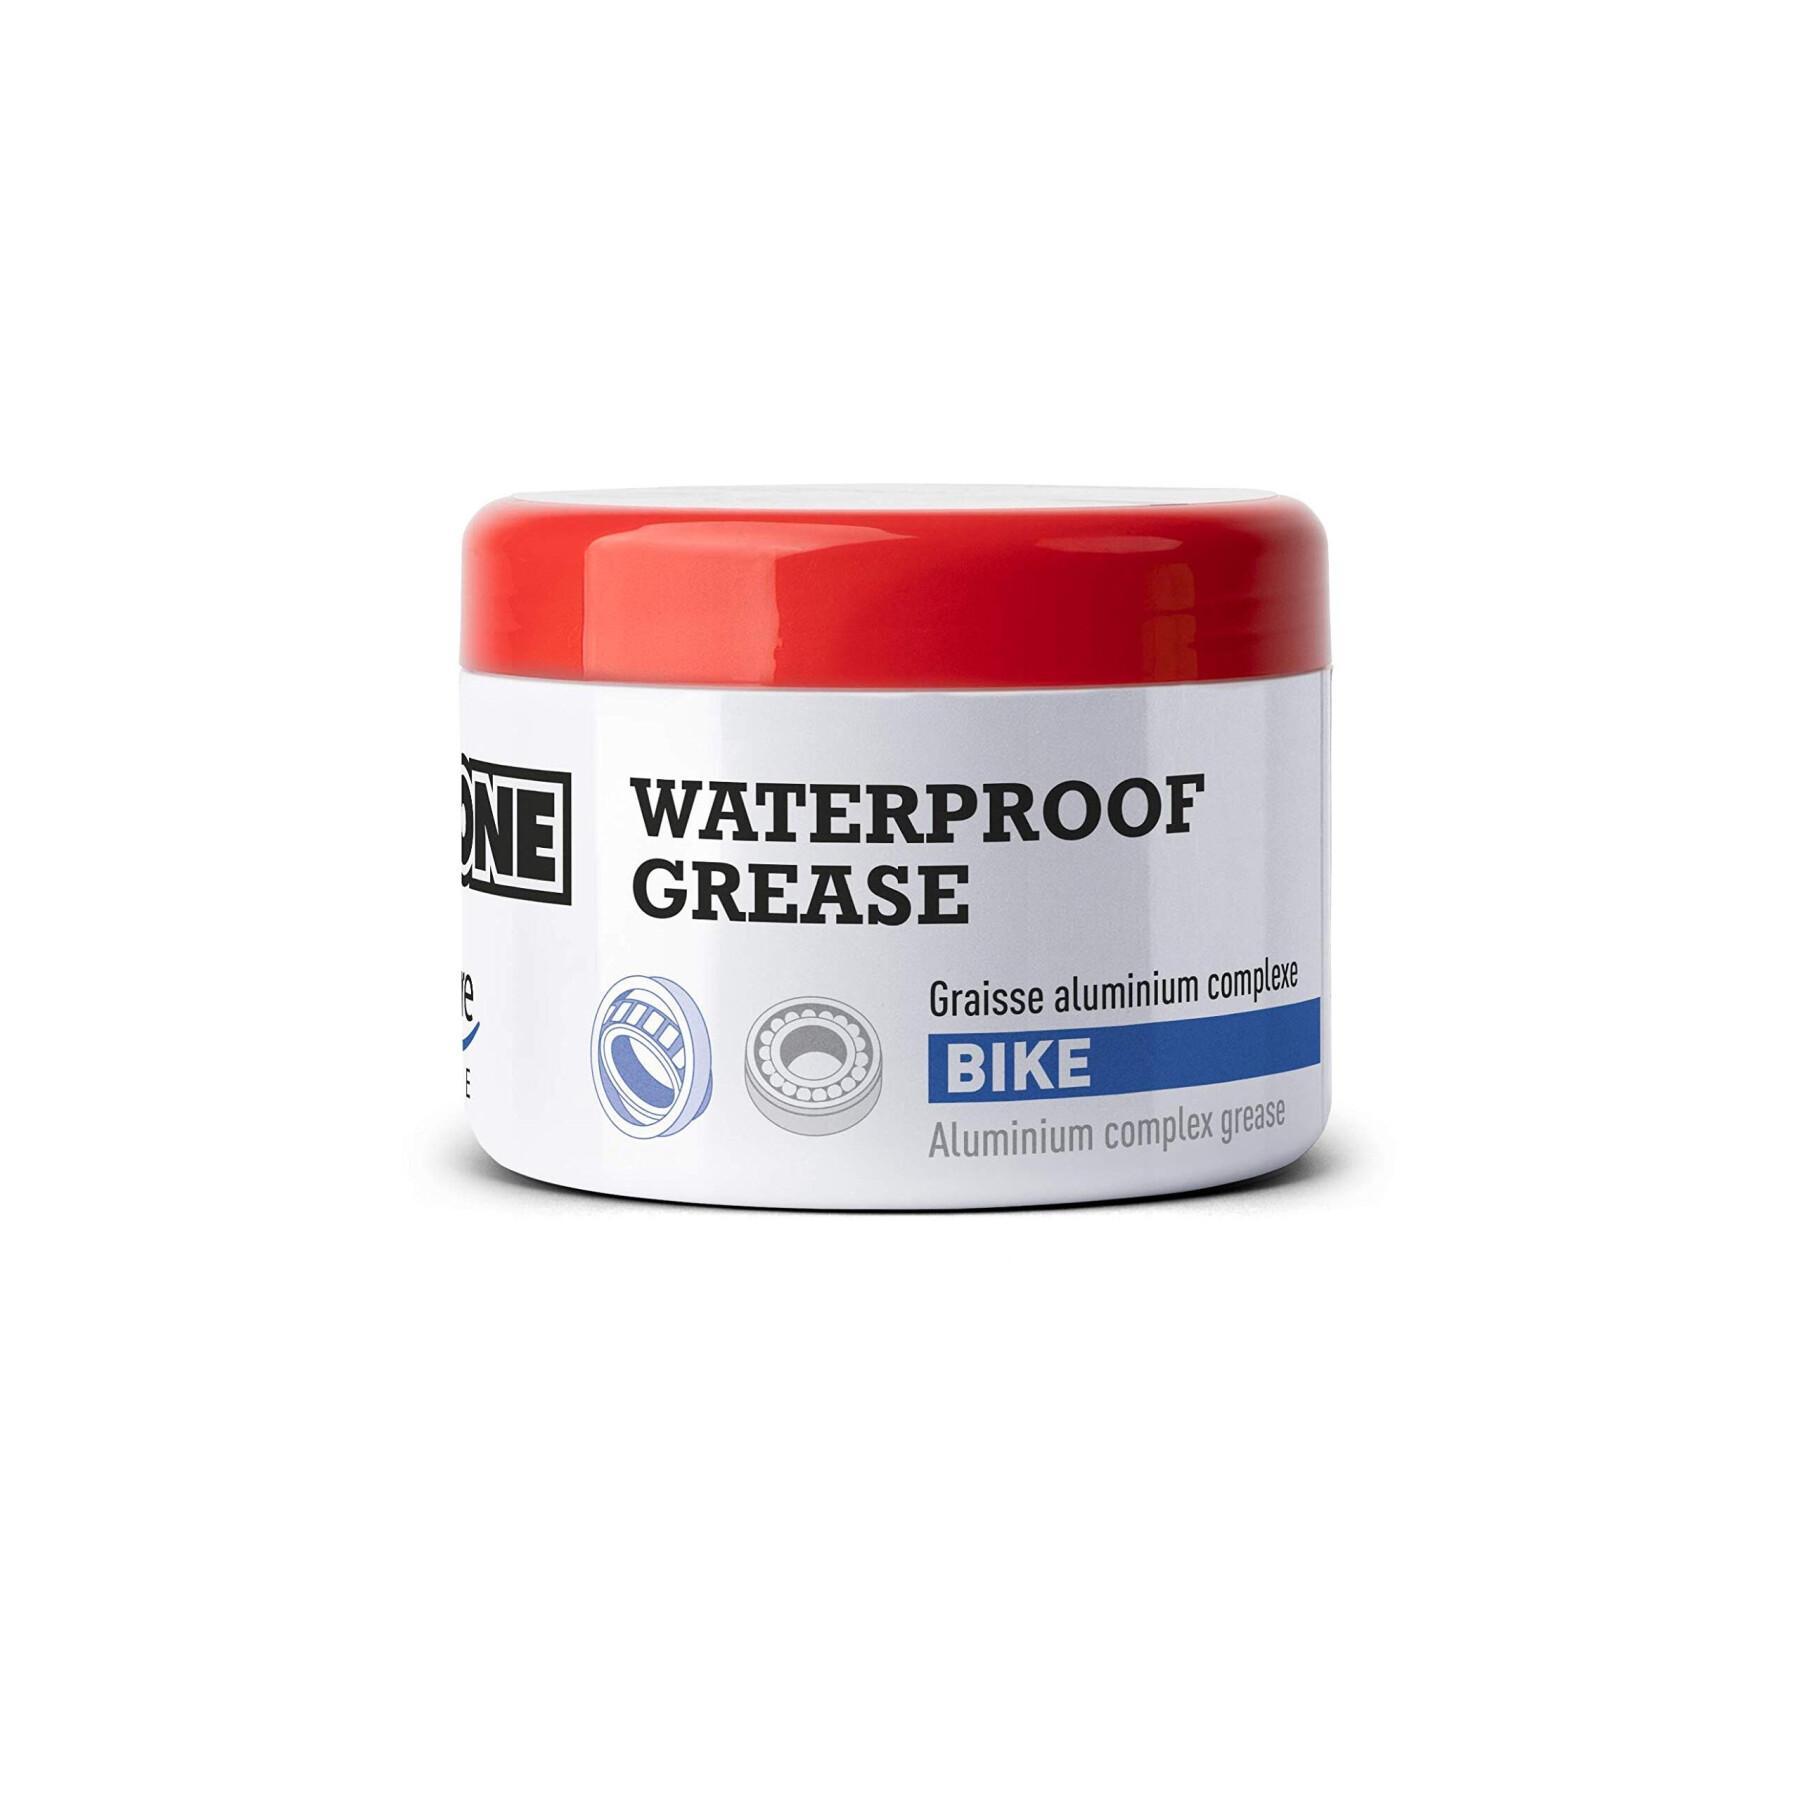 Grasso ipone waterproof